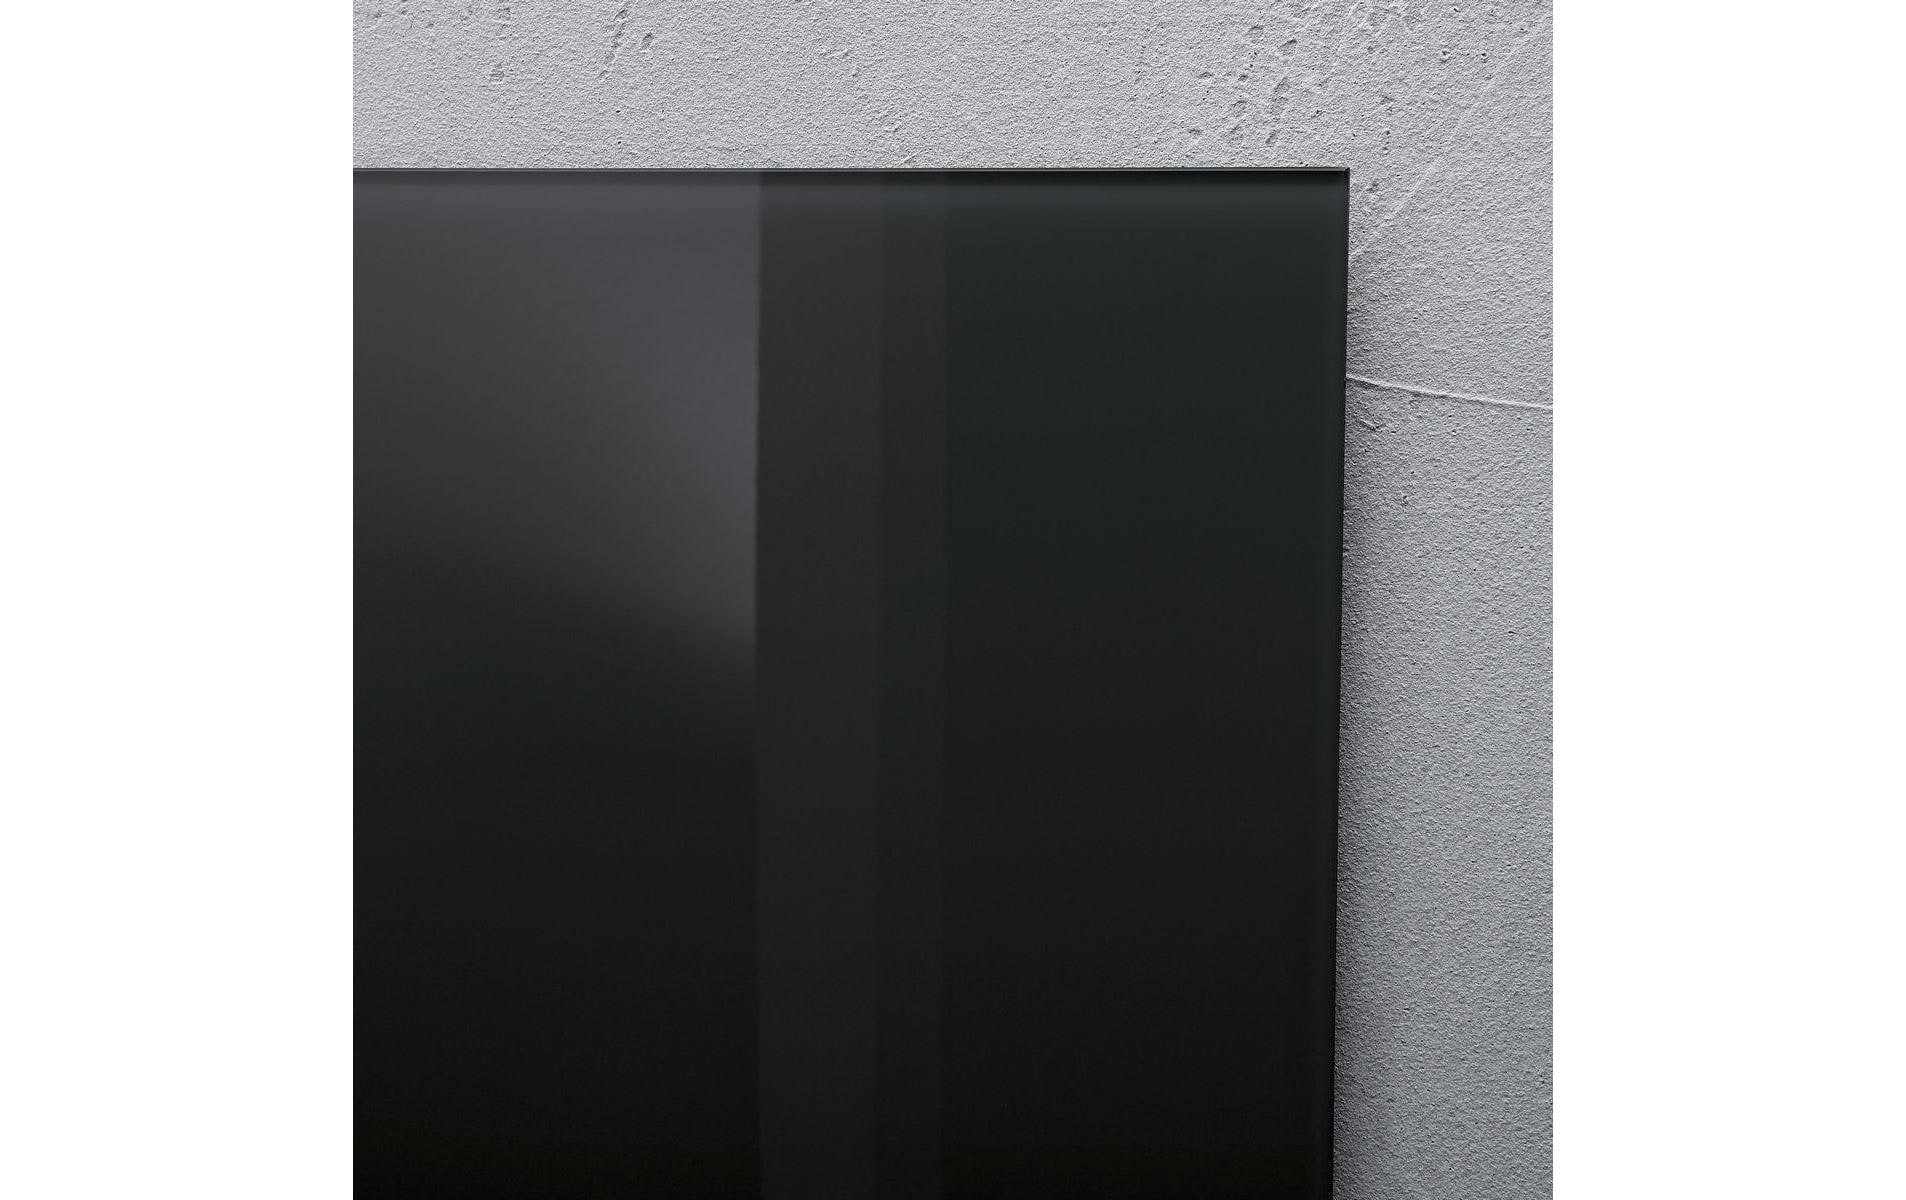 Sigel Magnethaftendes Glassboard Artverum 40 cm x 60 cm, Schwarz